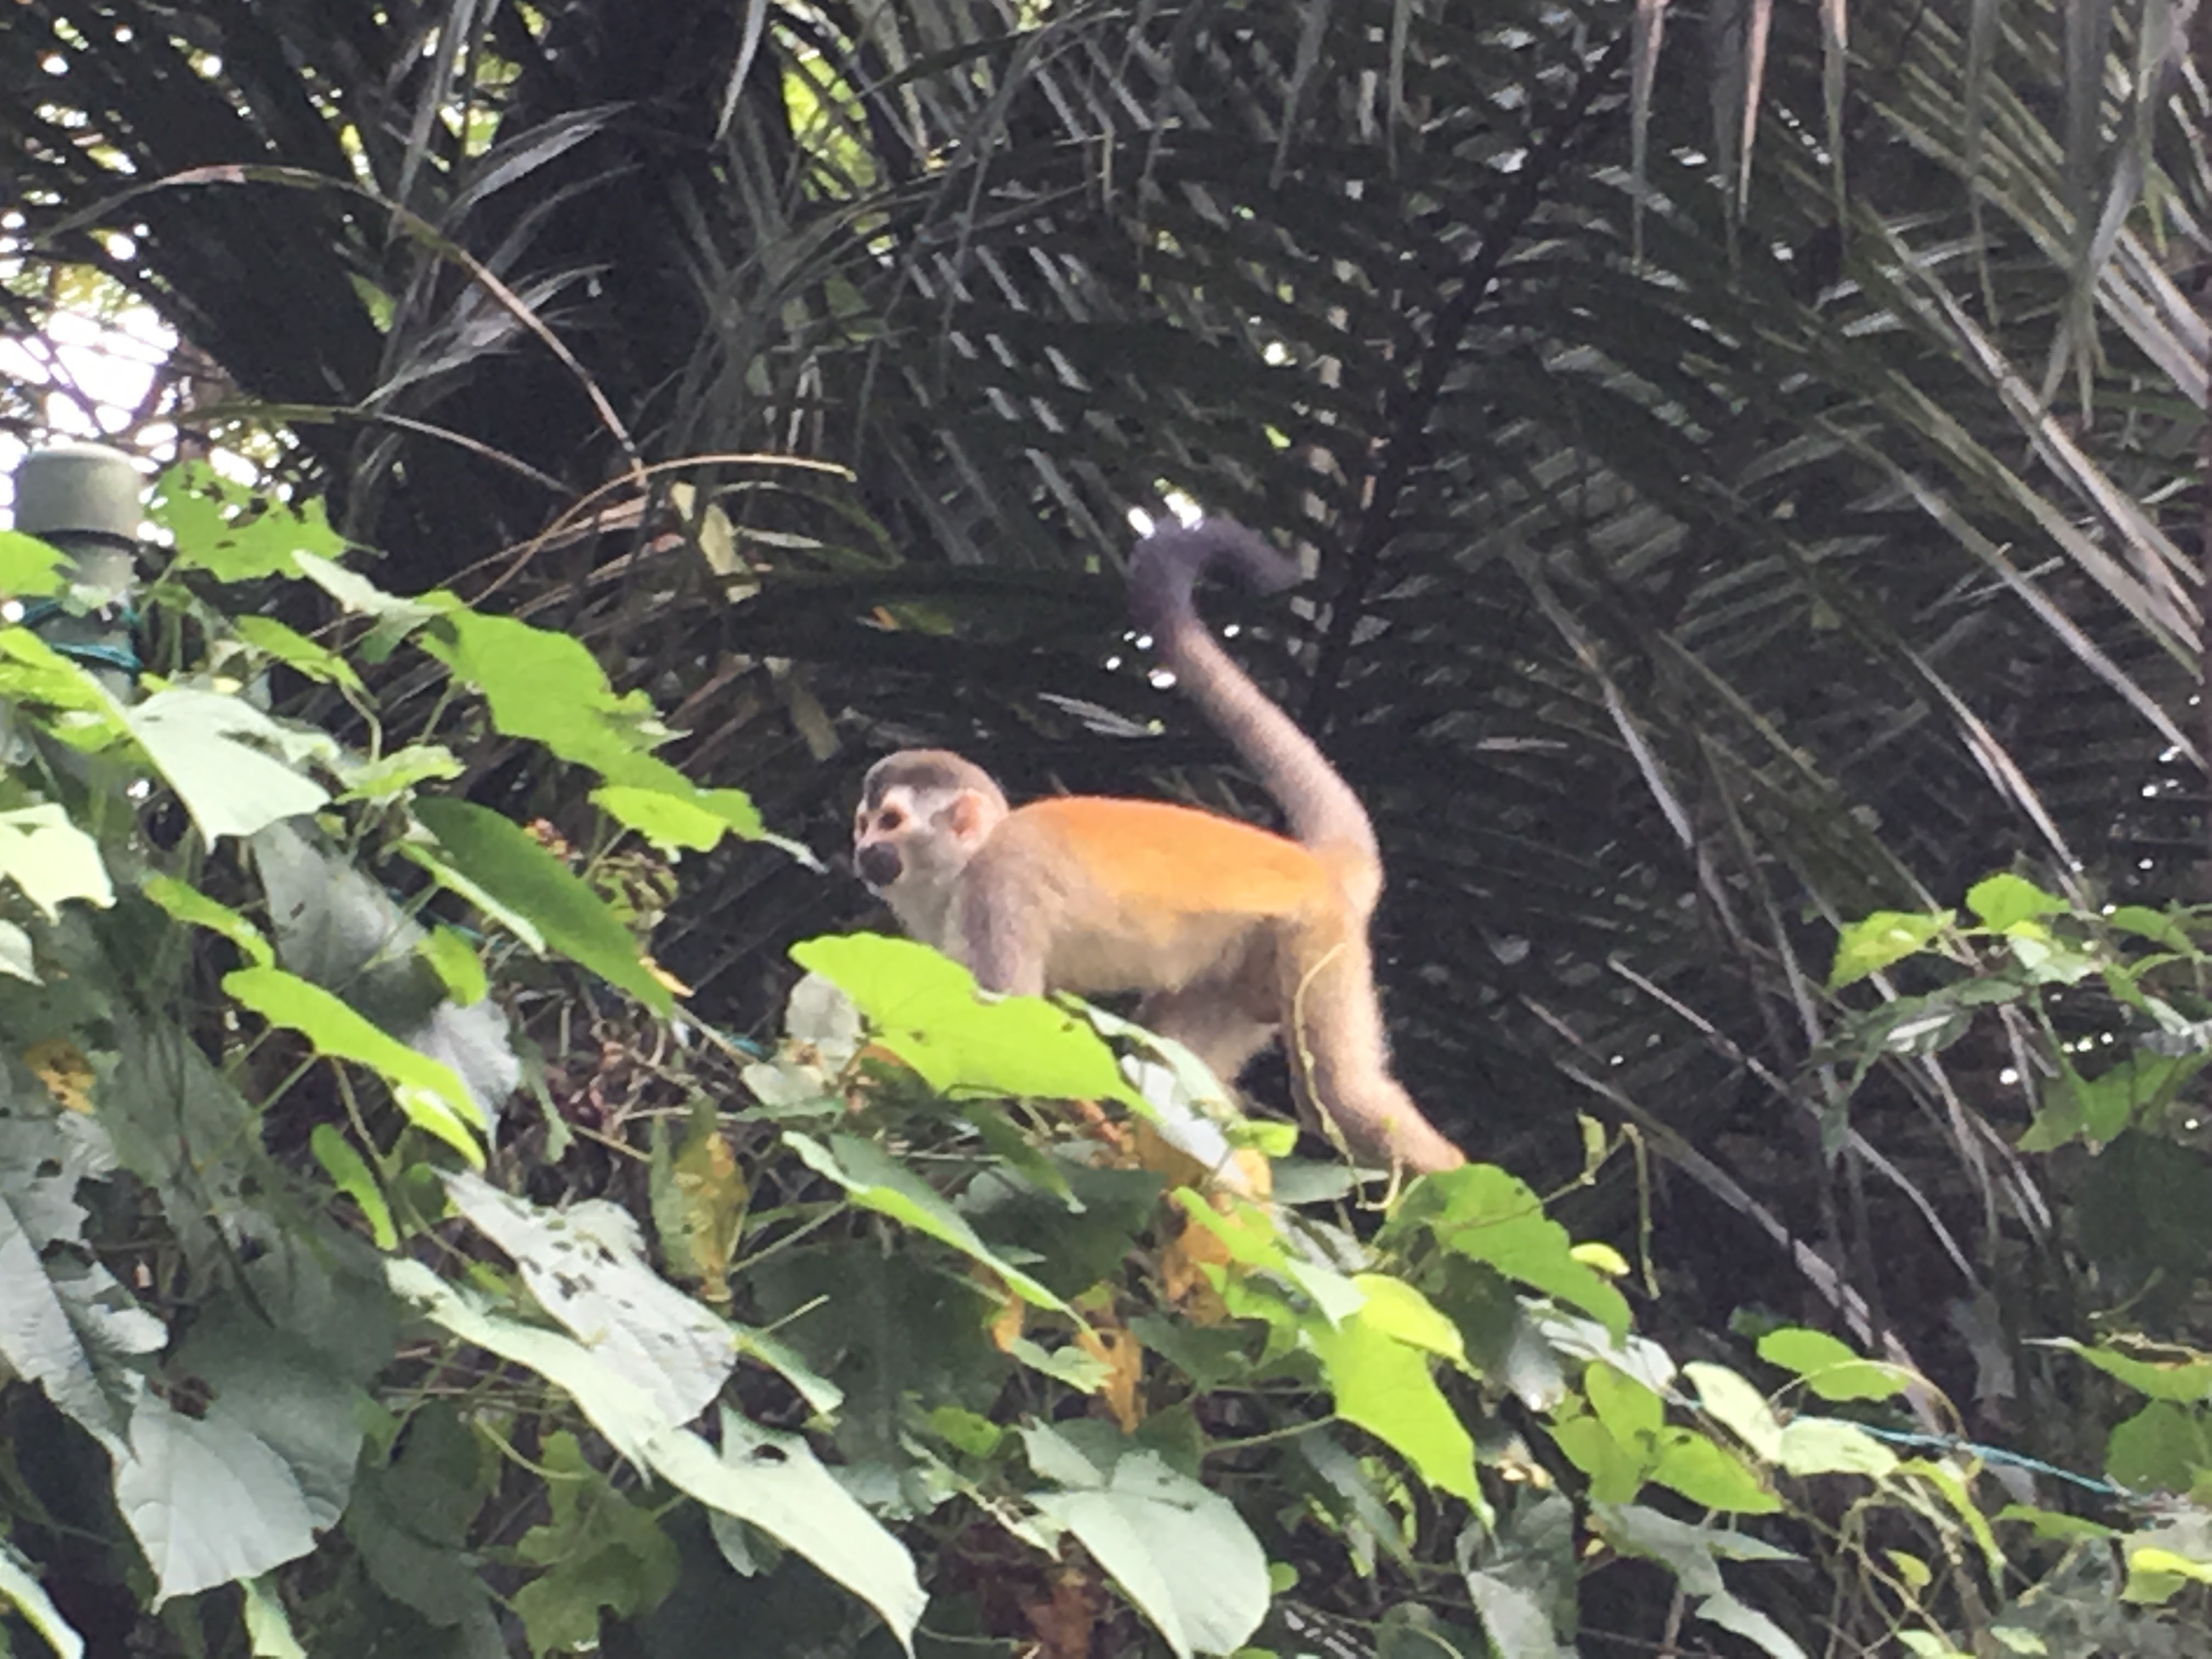 An active spider monkey